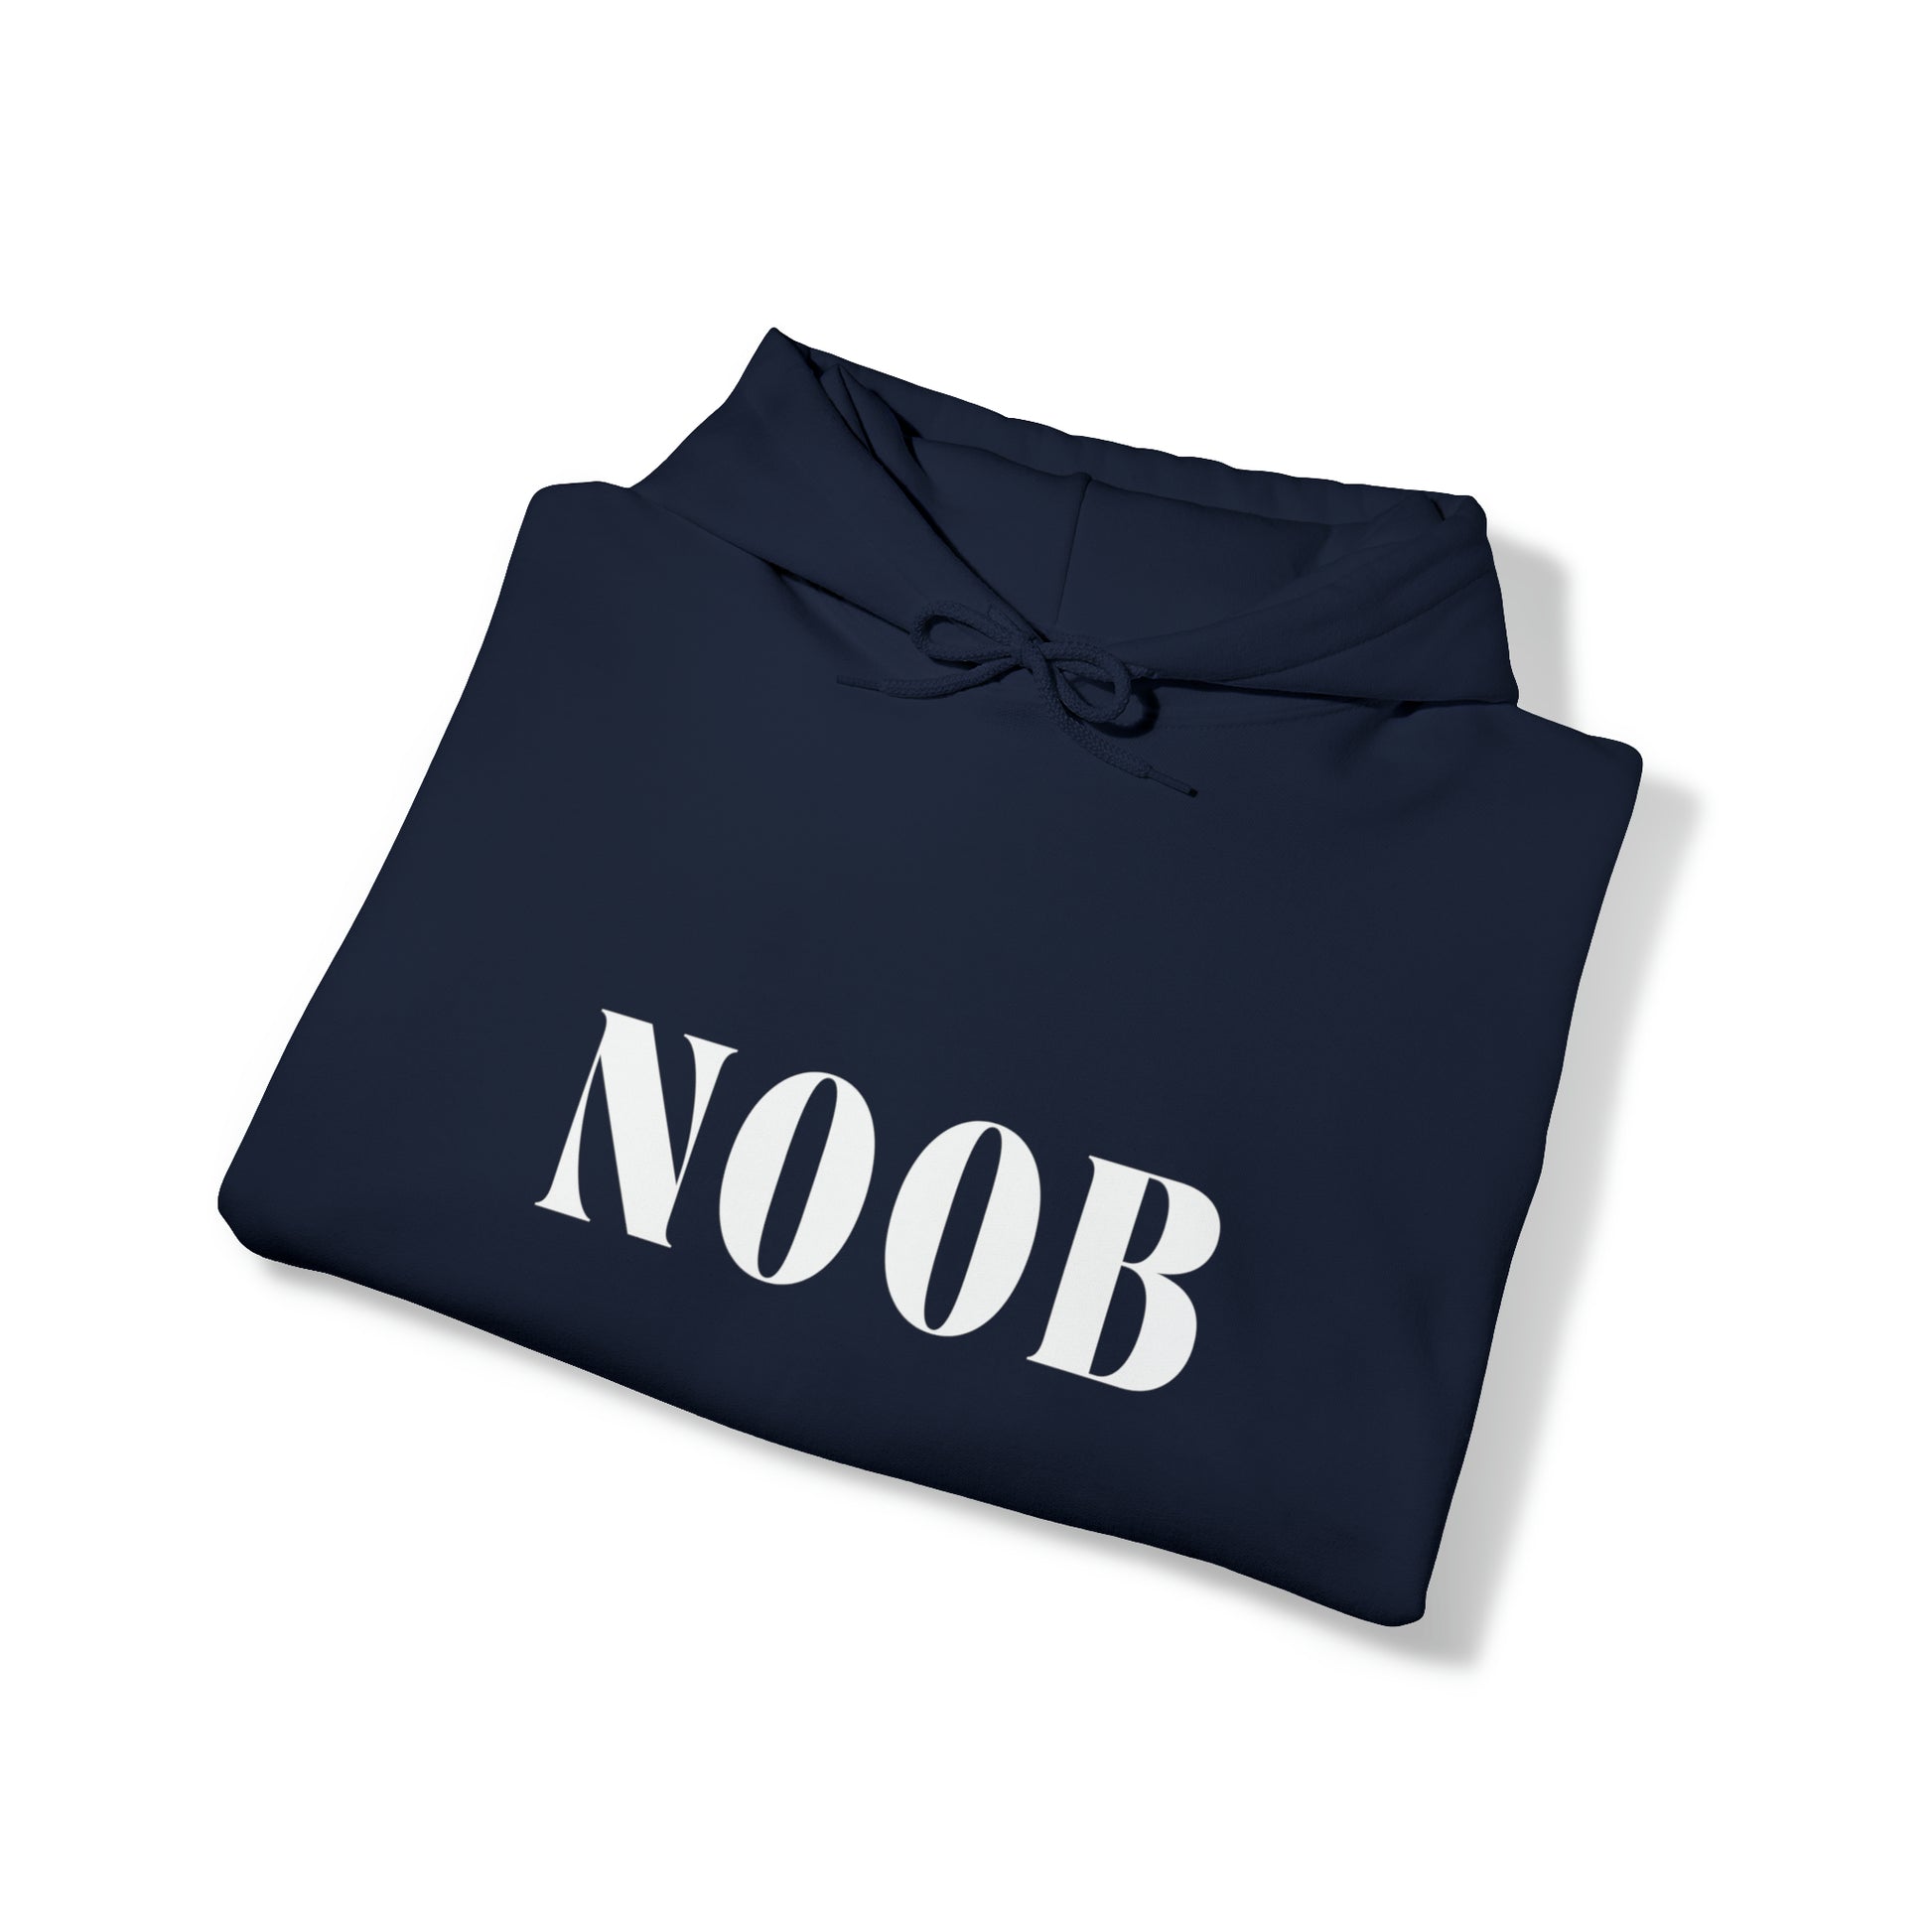   Noob Hoodie from HoodySZN.com